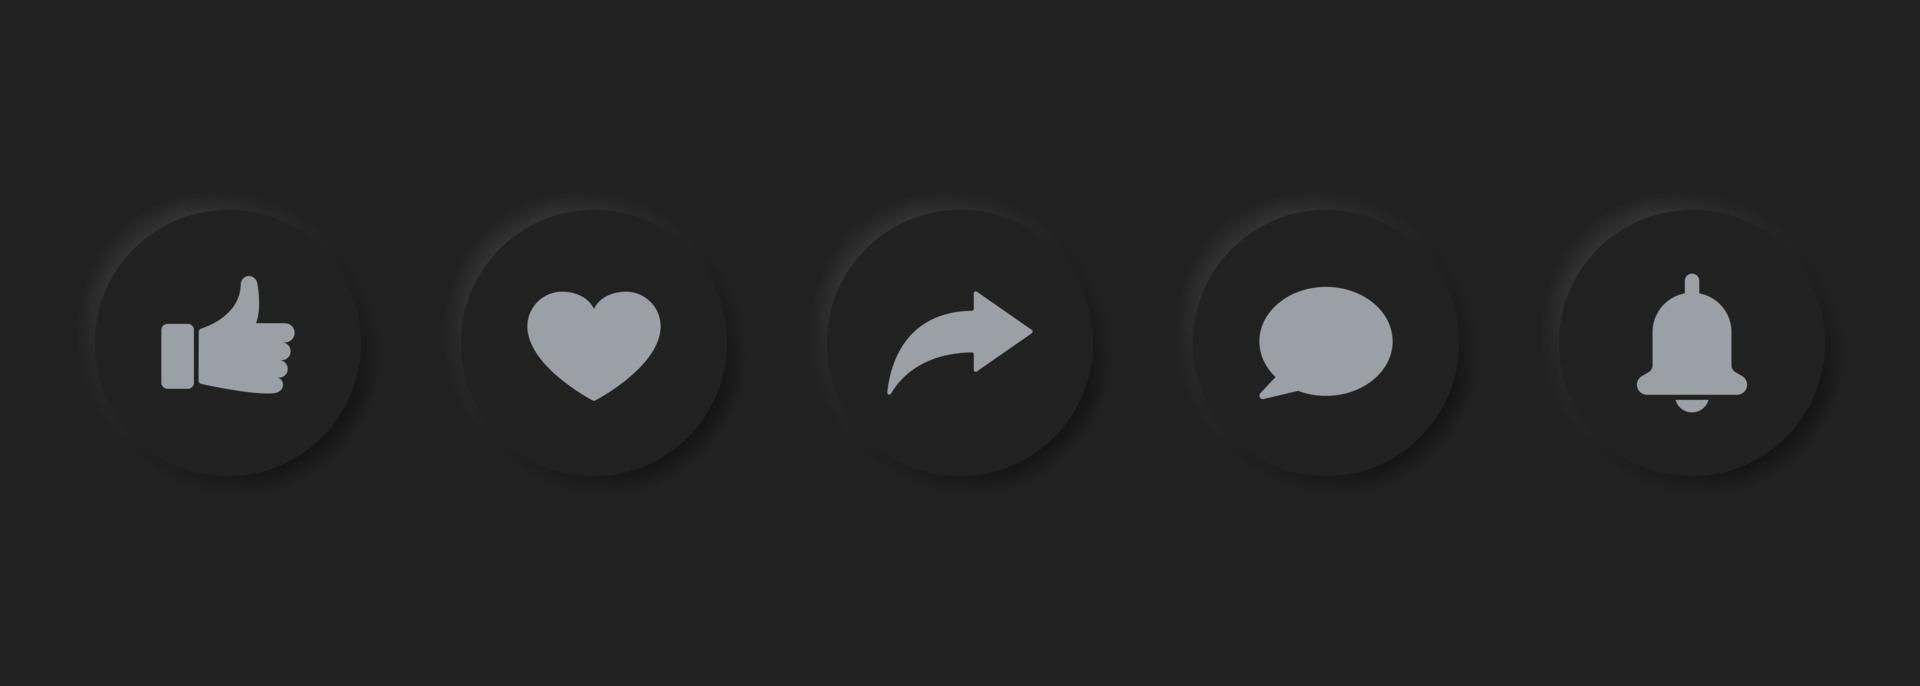 conjunto de botones de redes sociales de neumorfismo. barra de botones acanalados de círculo oscuro para la interfaz de la aplicación. botón de compromiso multimedia moderno. ilustración vectorial aislada. vector